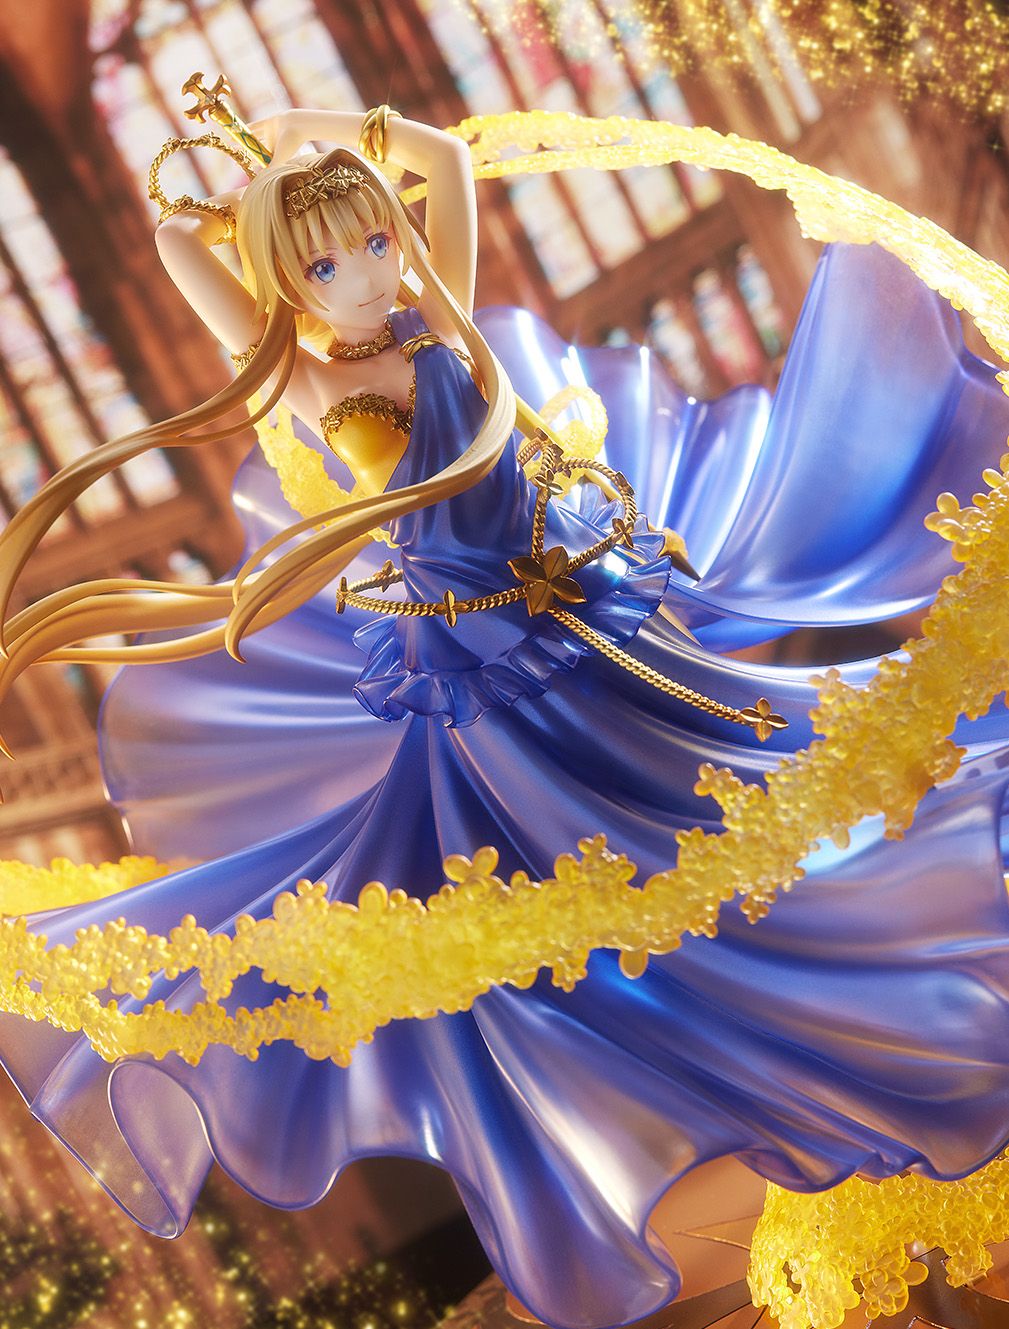 【限定販売】ソードアート・オンライン『アリス -Crystal Dress Ver.-』1/7 完成品フィギュア-006